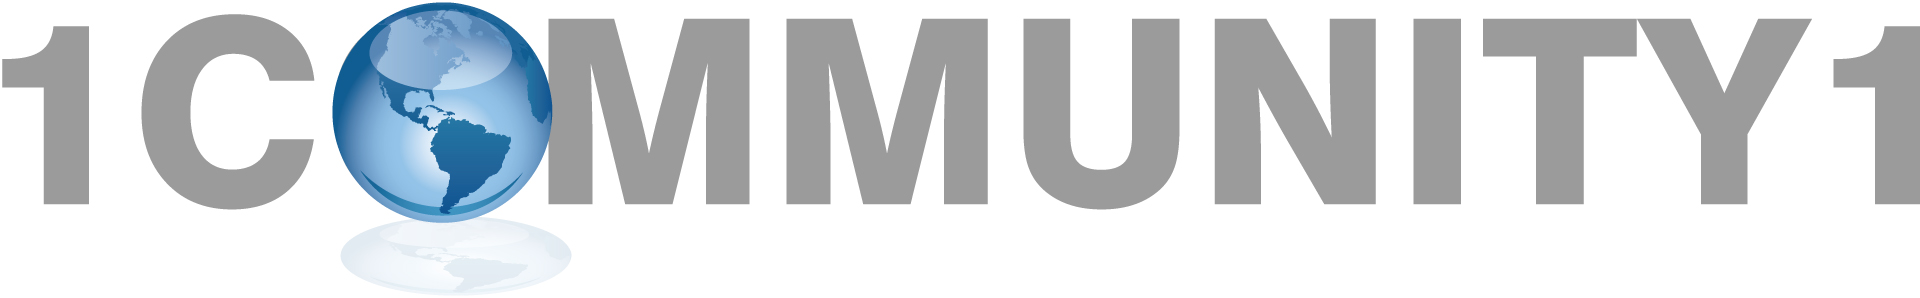 1COMMUNITY1 Logo